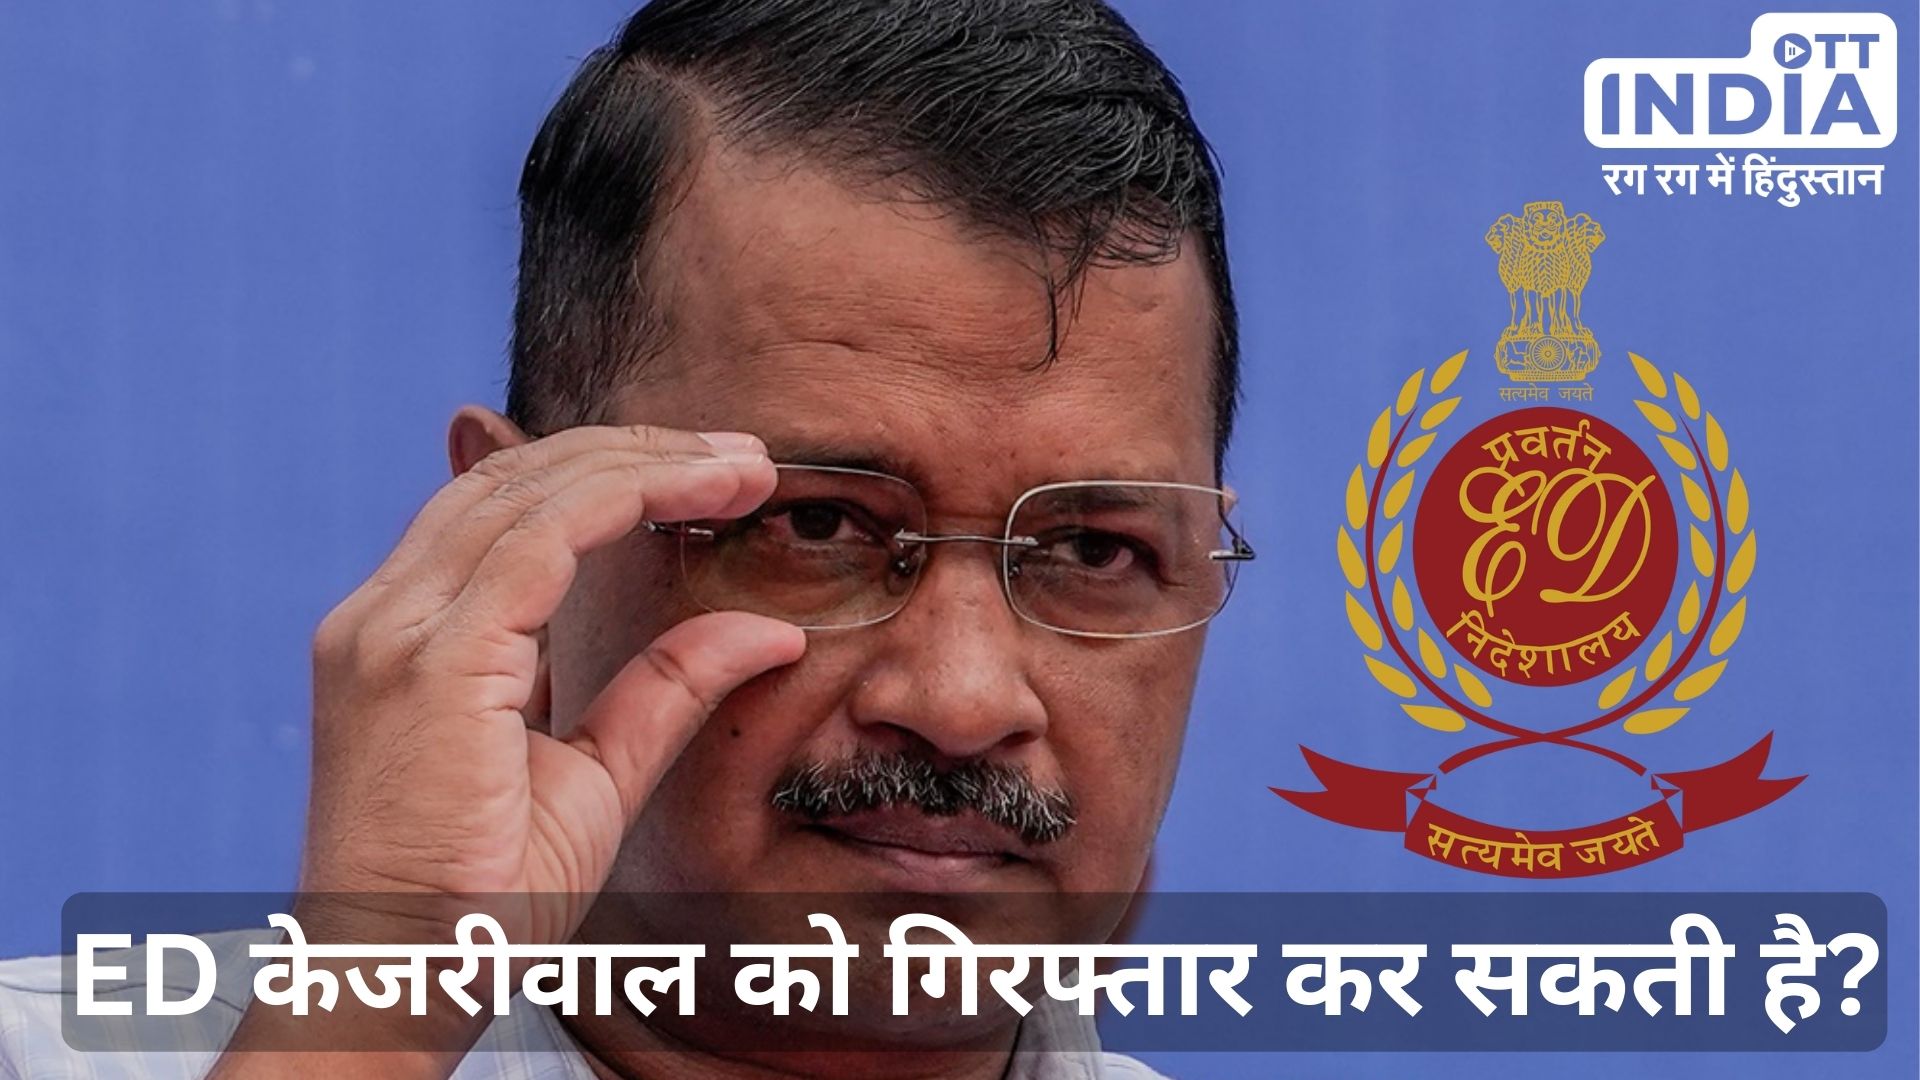 ED in Action: दिल्ली के मुख्यमंत्री को ईडी गिरफ्तार कैसे करेगी? ये नियम जानना जरुरी…